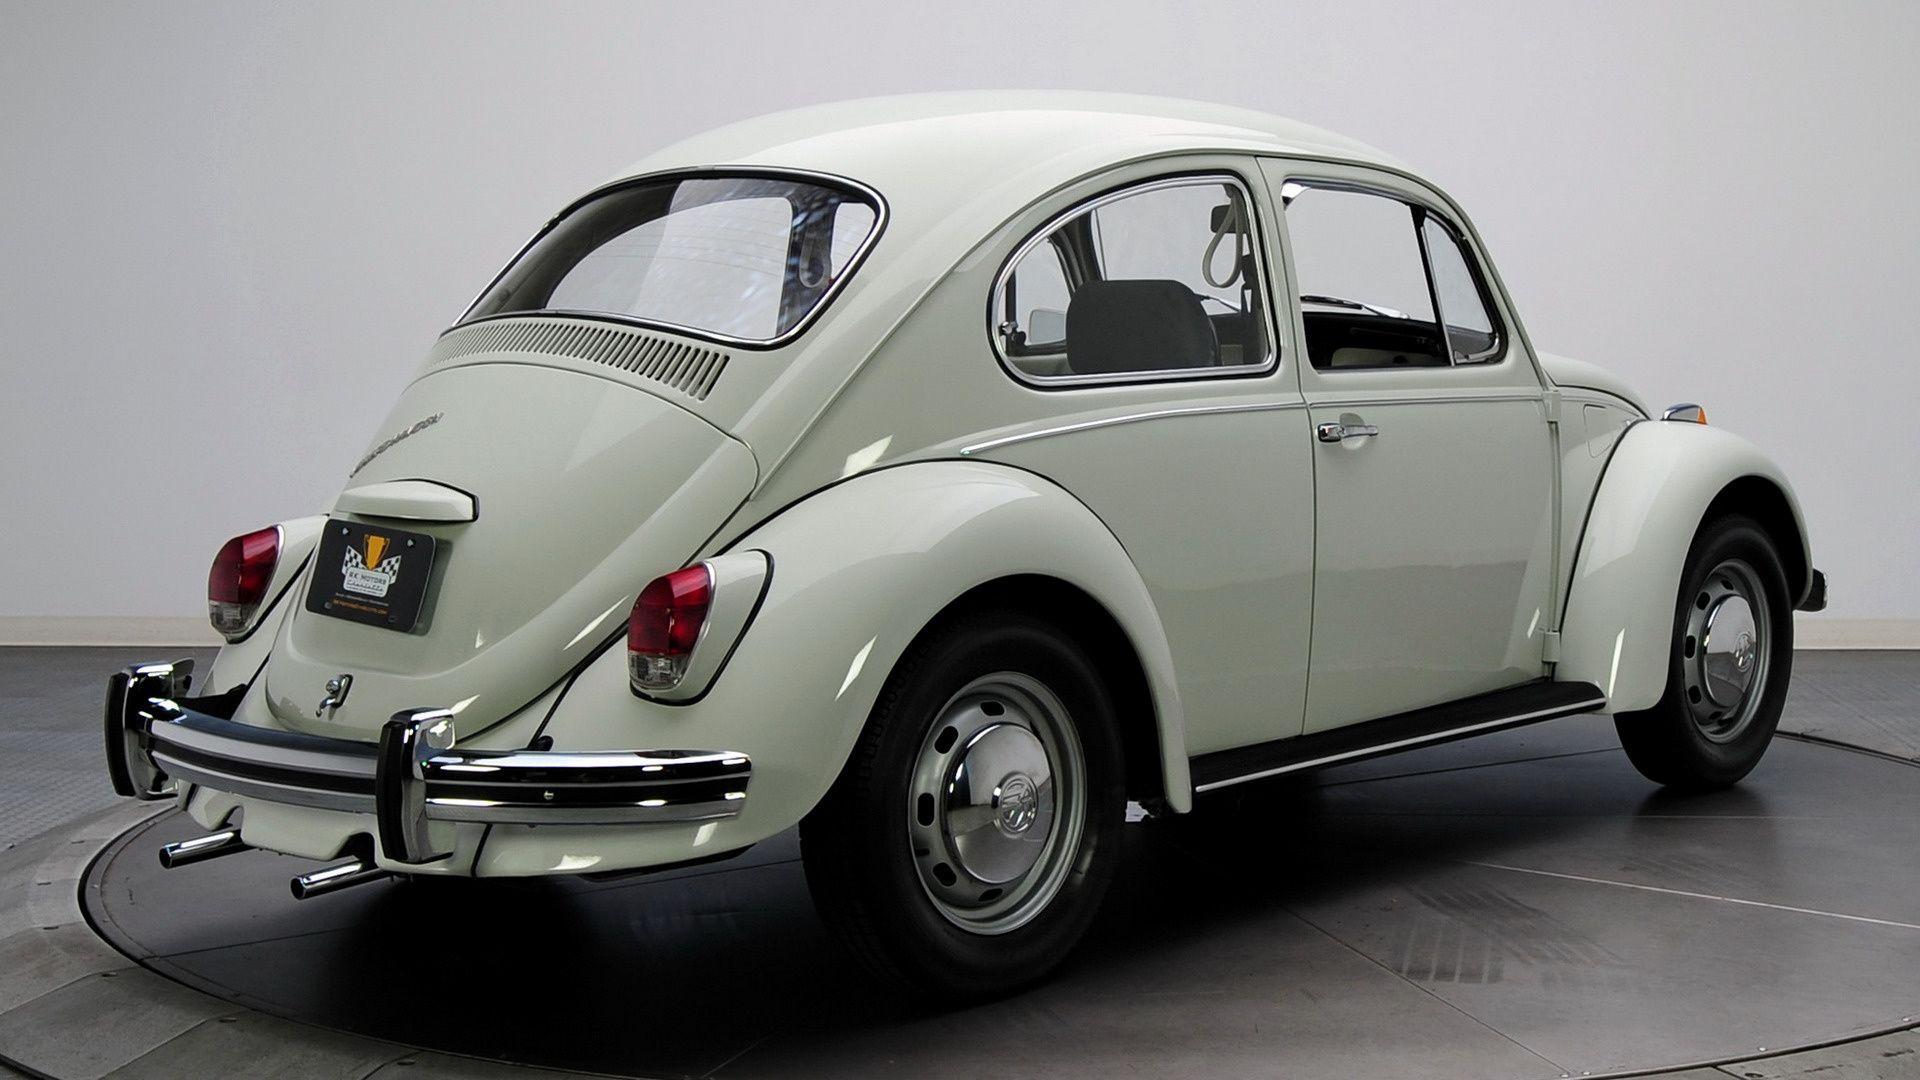 Volkswagen Beetle and HD Image